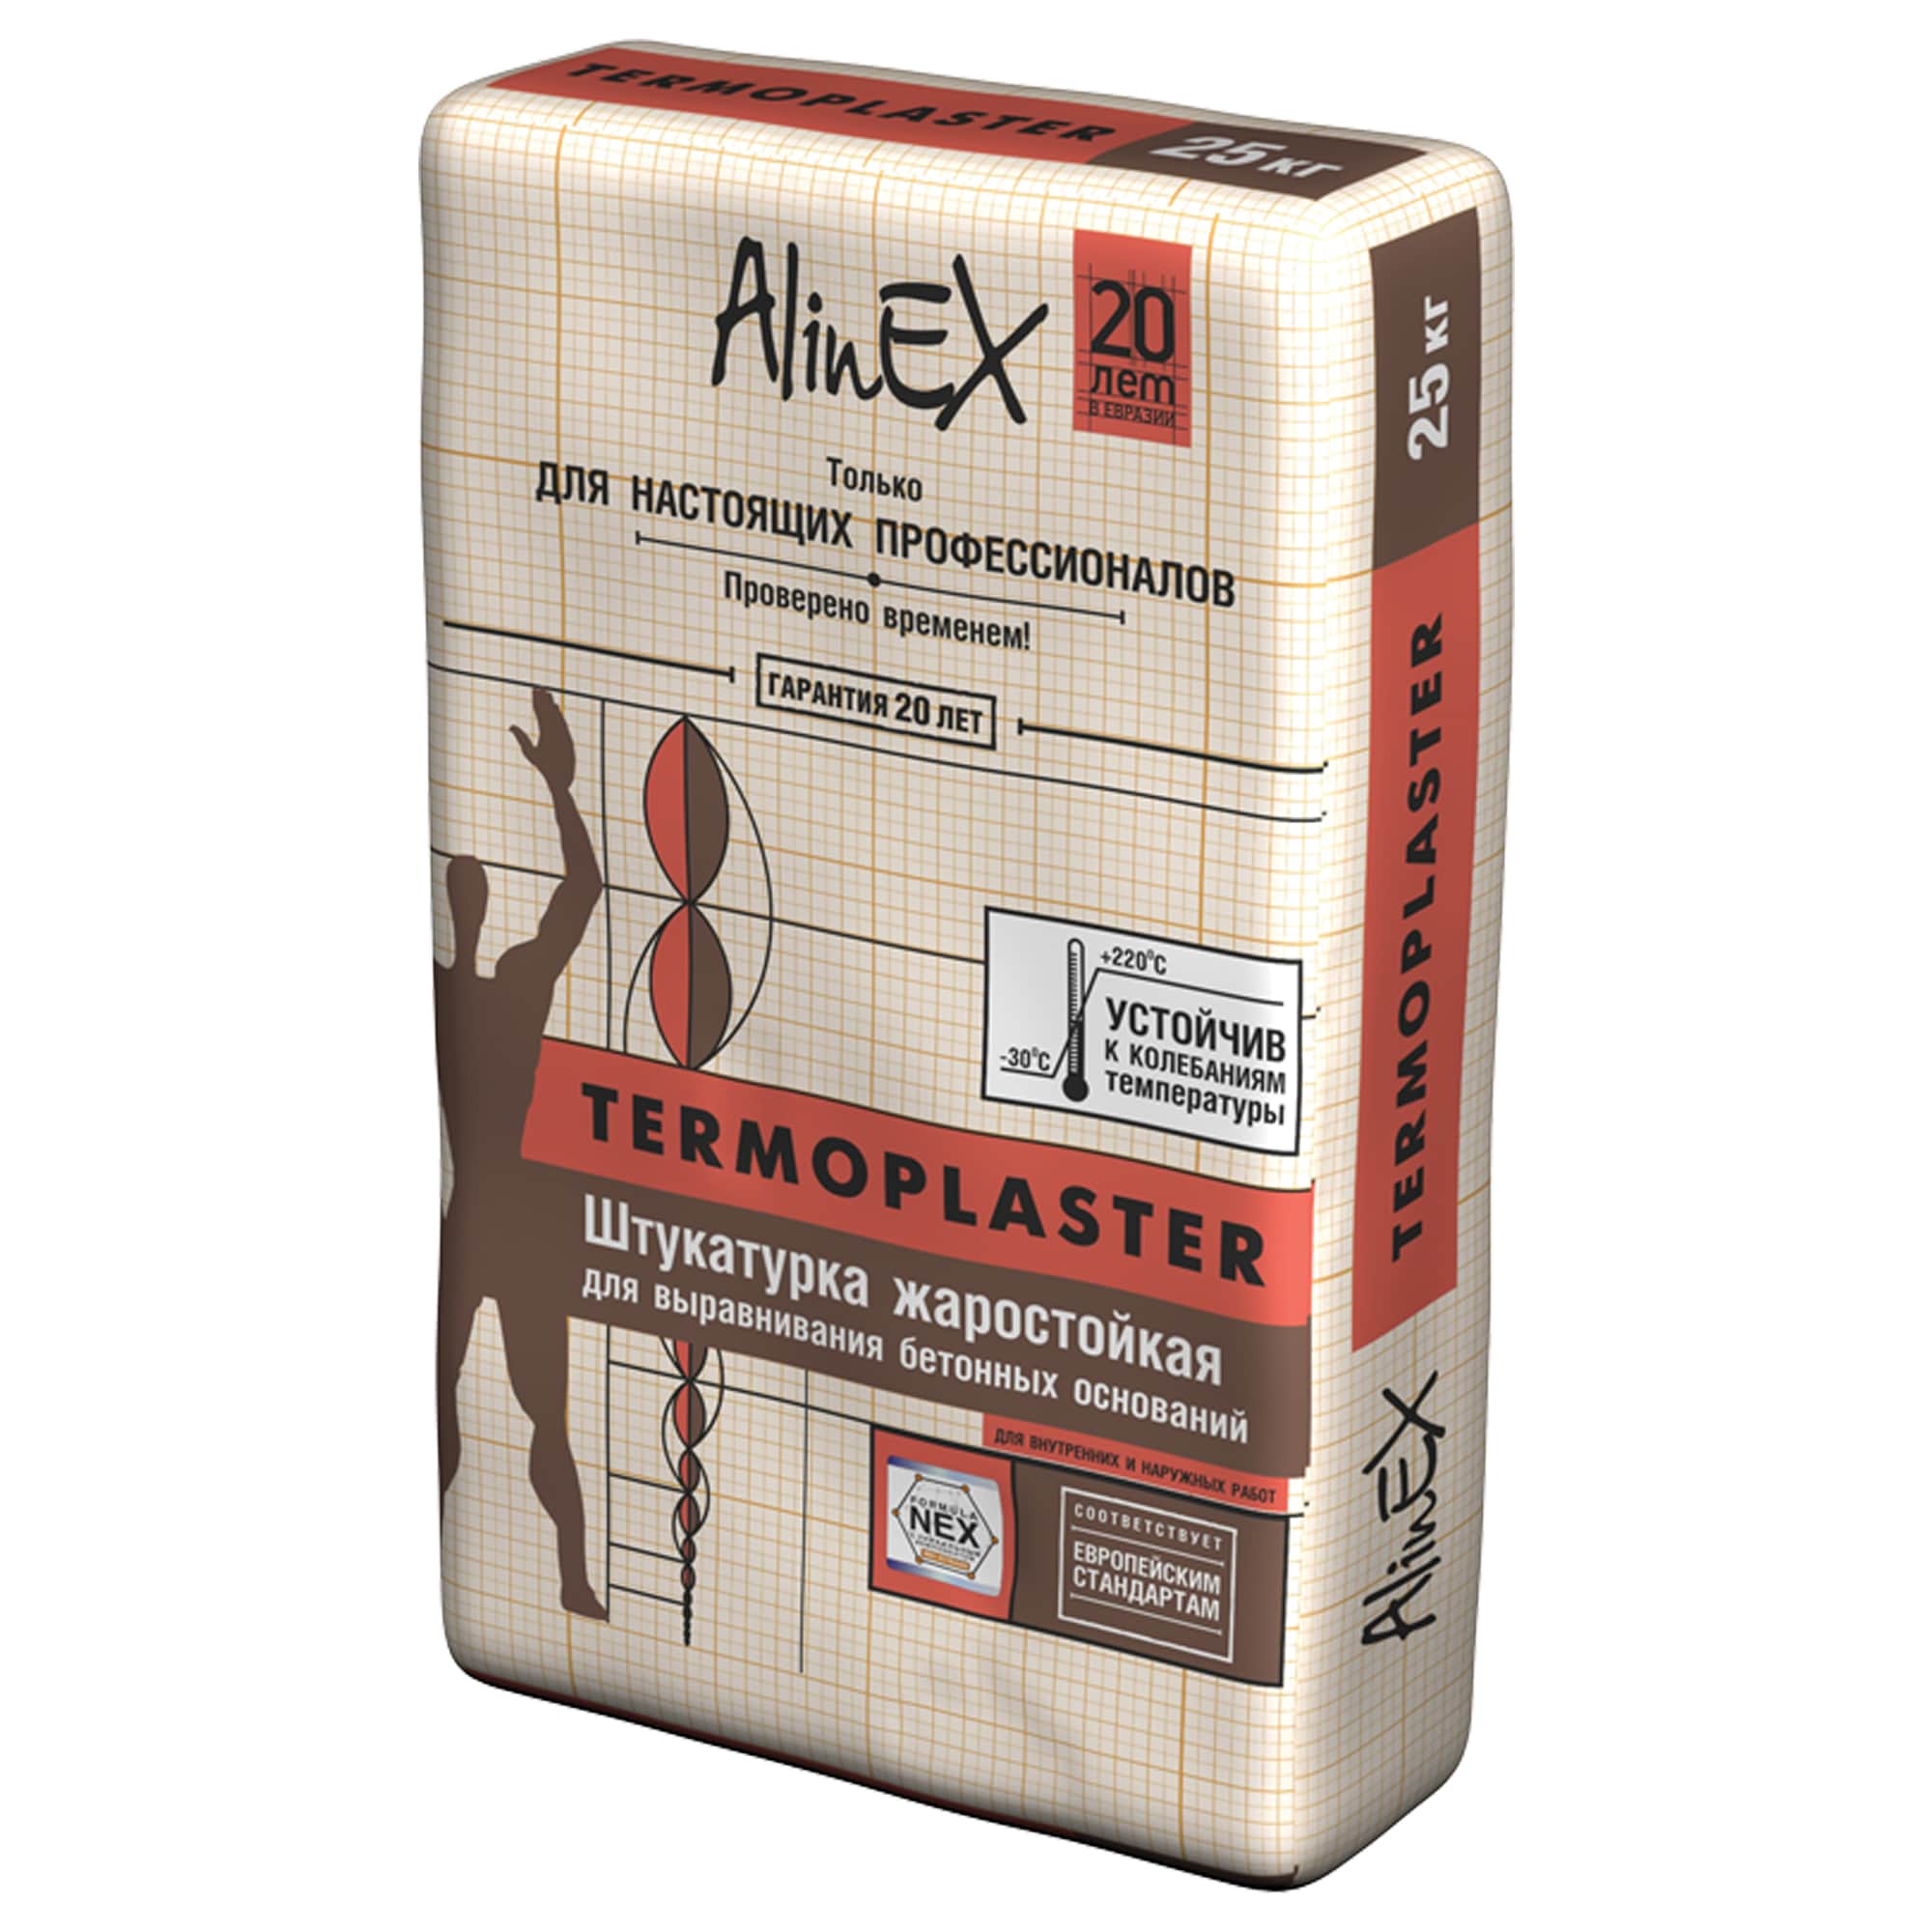 Штукатурка AlinEX TERMOPLASTER, 25 кг (жаростойкая, цементная)/5709